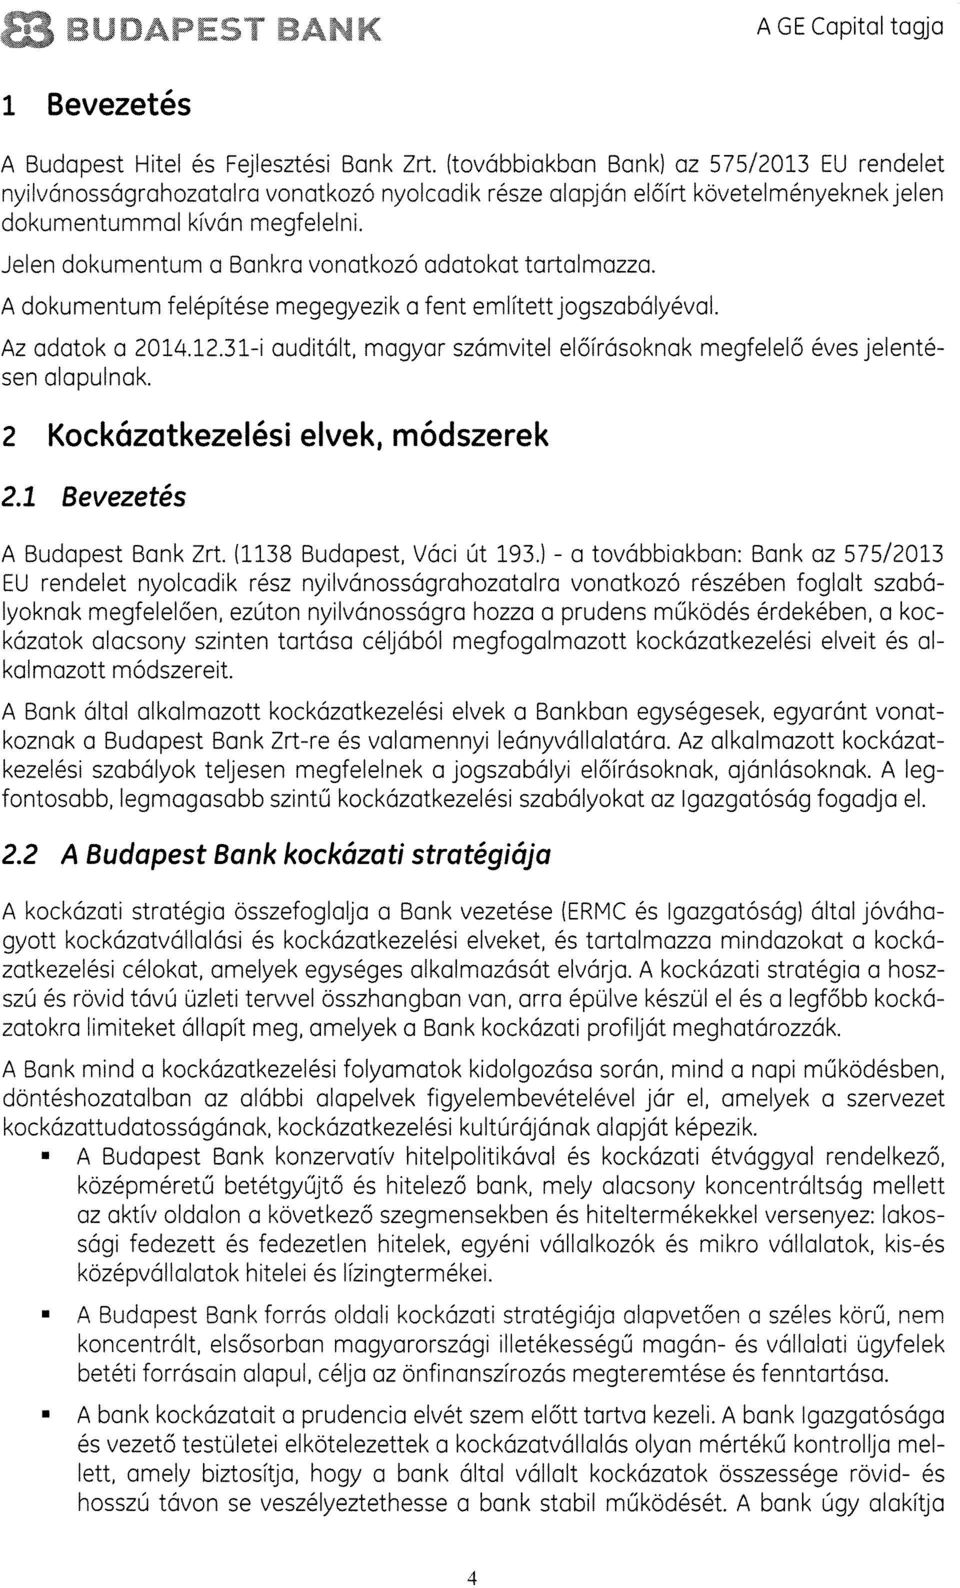 adatokat tartalmazza. A dokumentum felépitése megegyezik a fent emlitettjogszabályeval. Az adatok a 2014.12.31-i auditált, magyar számvitel elöirásoknak megfelelô évesjelenté sen alapulnak.